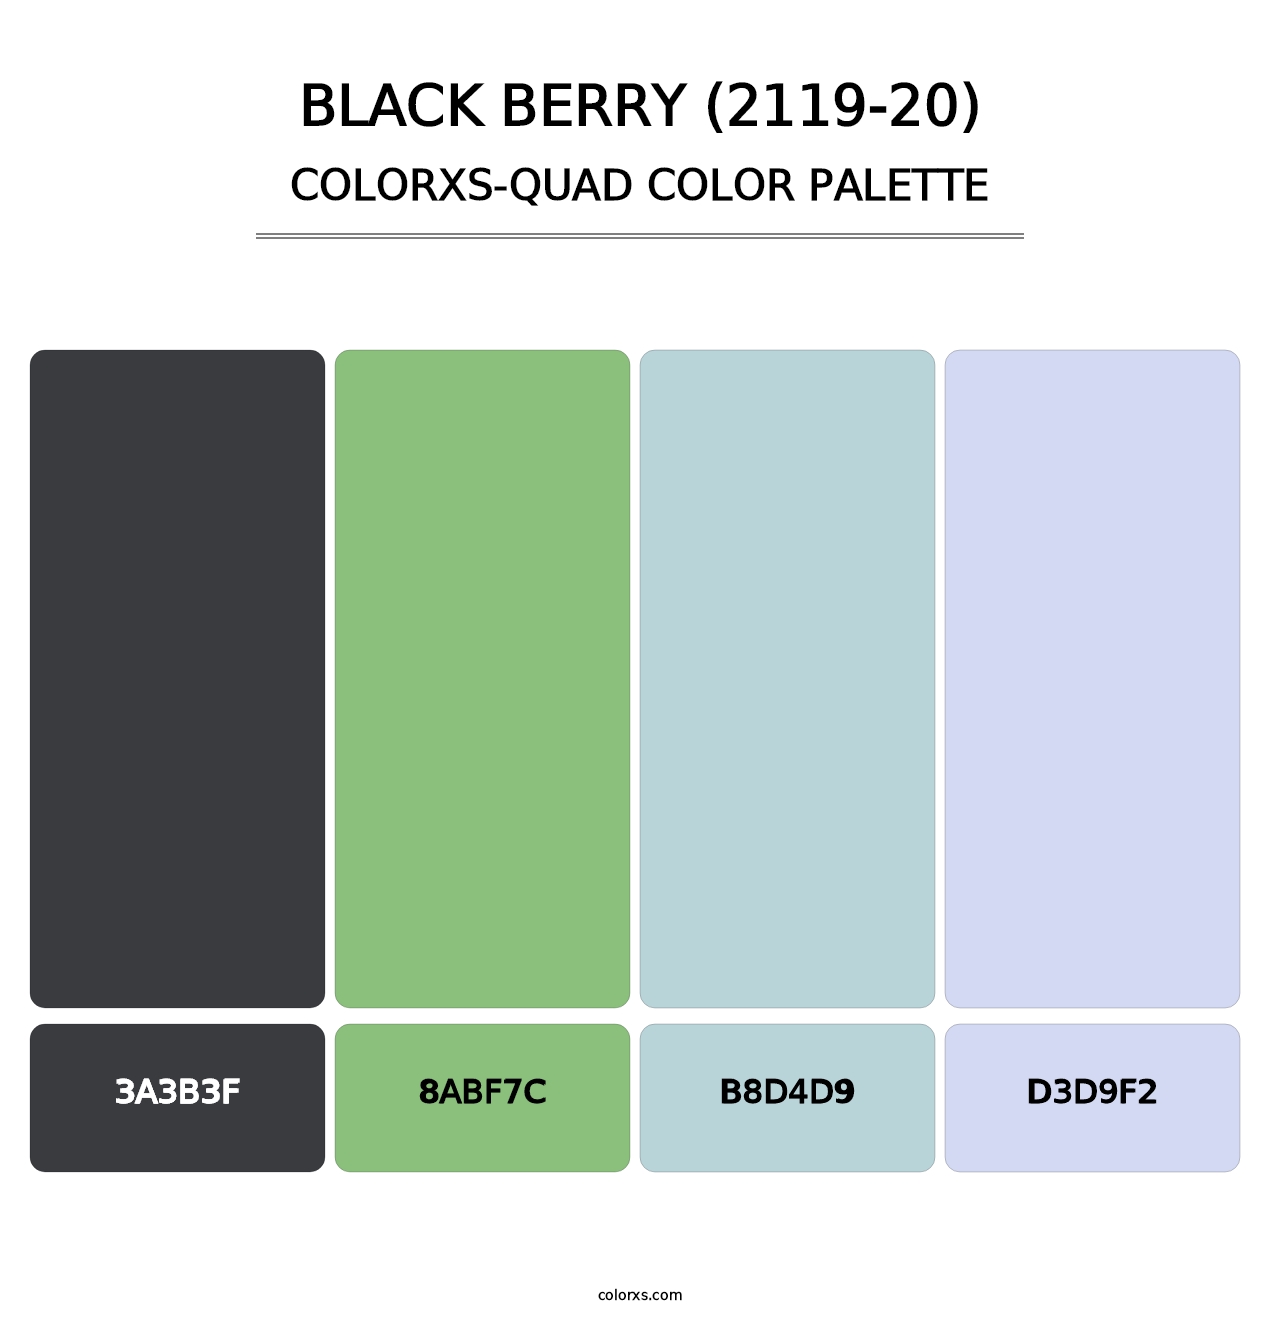 Black Berry (2119-20) - Colorxs Quad Palette